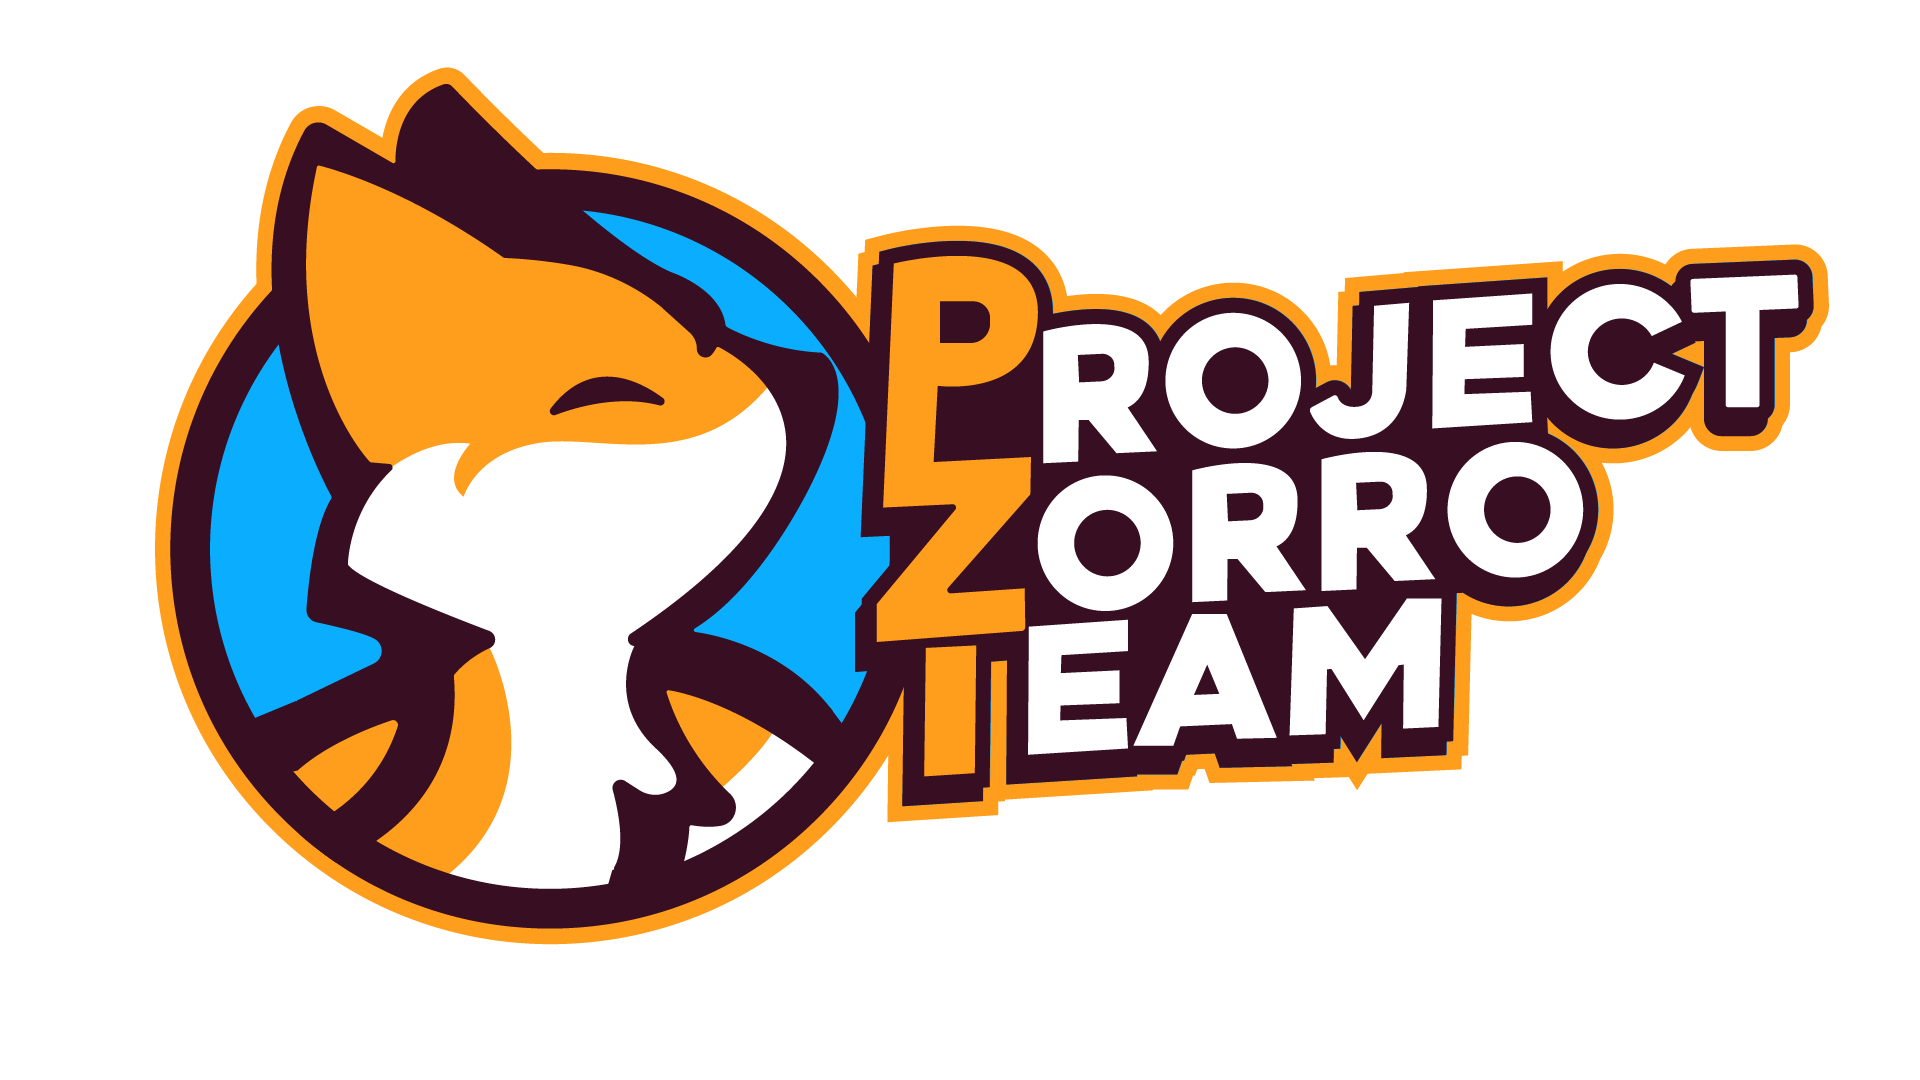 Project Zorro Team